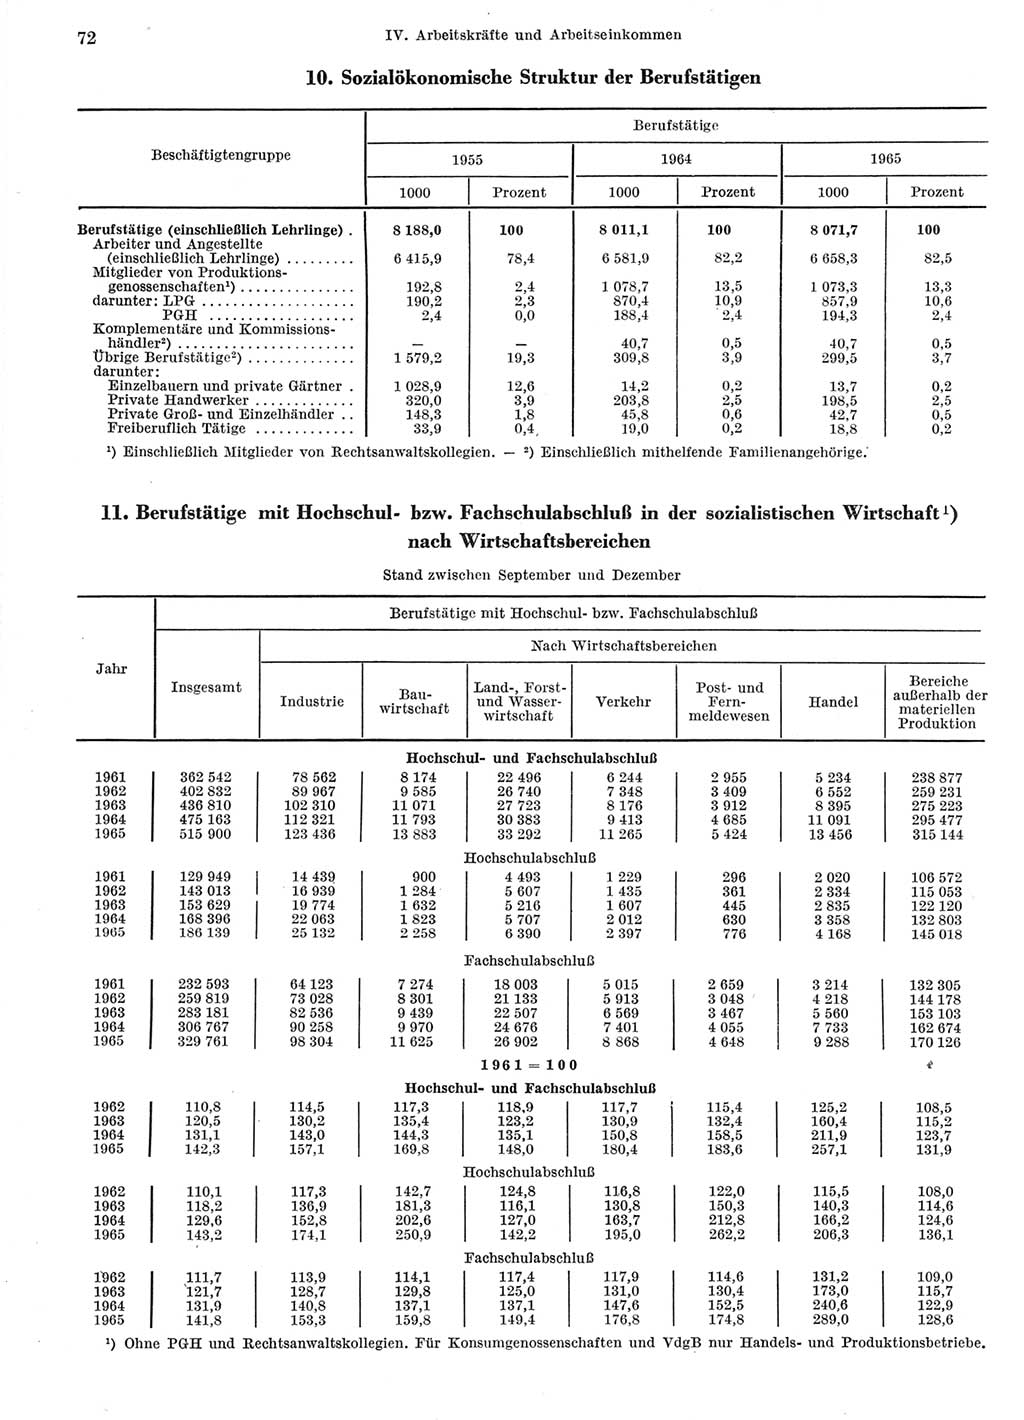 Statistisches Jahrbuch der Deutschen Demokratischen Republik (DDR) 1966, Seite 72 (Stat. Jb. DDR 1966, S. 72)